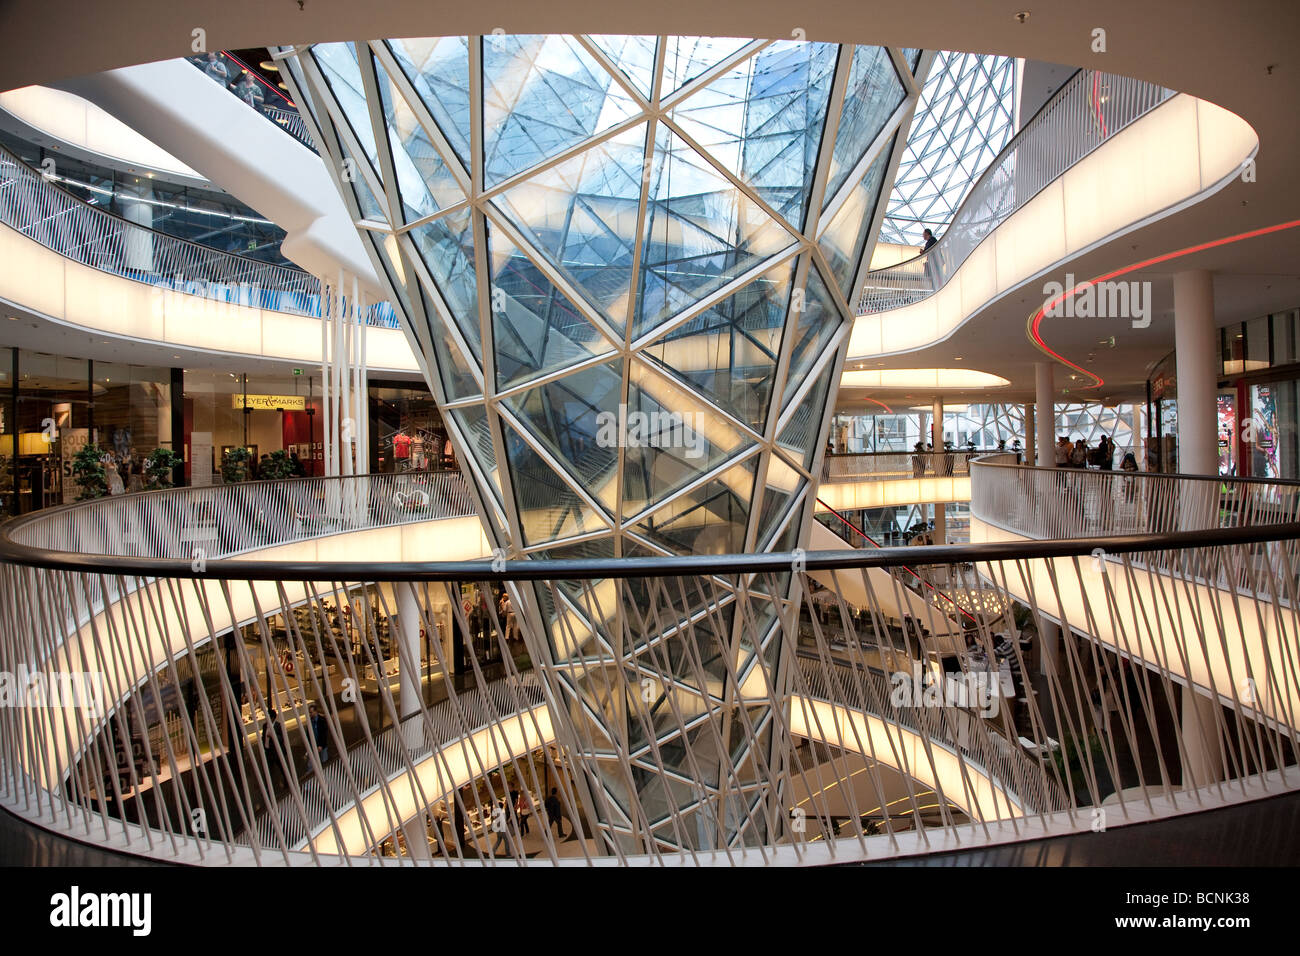 MyZeil Shopping Mall, entworfen von Architekt Massimiliano Fuksas und eröffnet im Februar 2009 Stockfoto